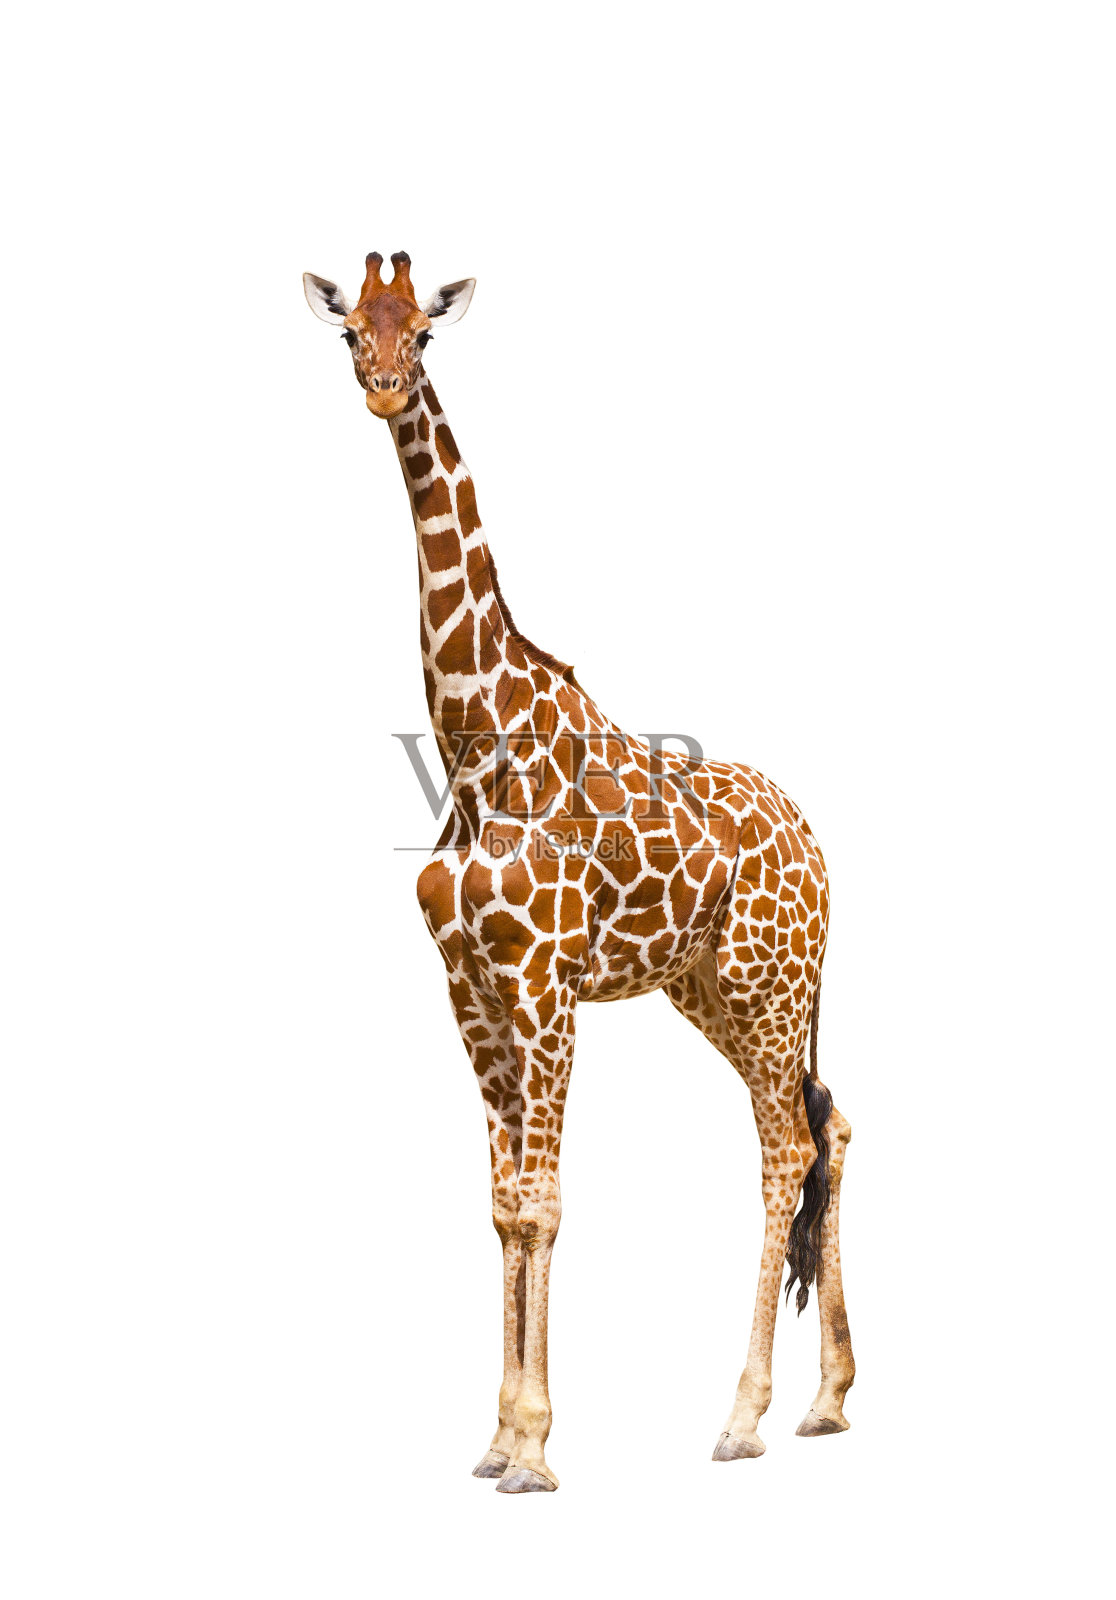 长颈鹿(Giraffa鹿豹座)照片摄影图片